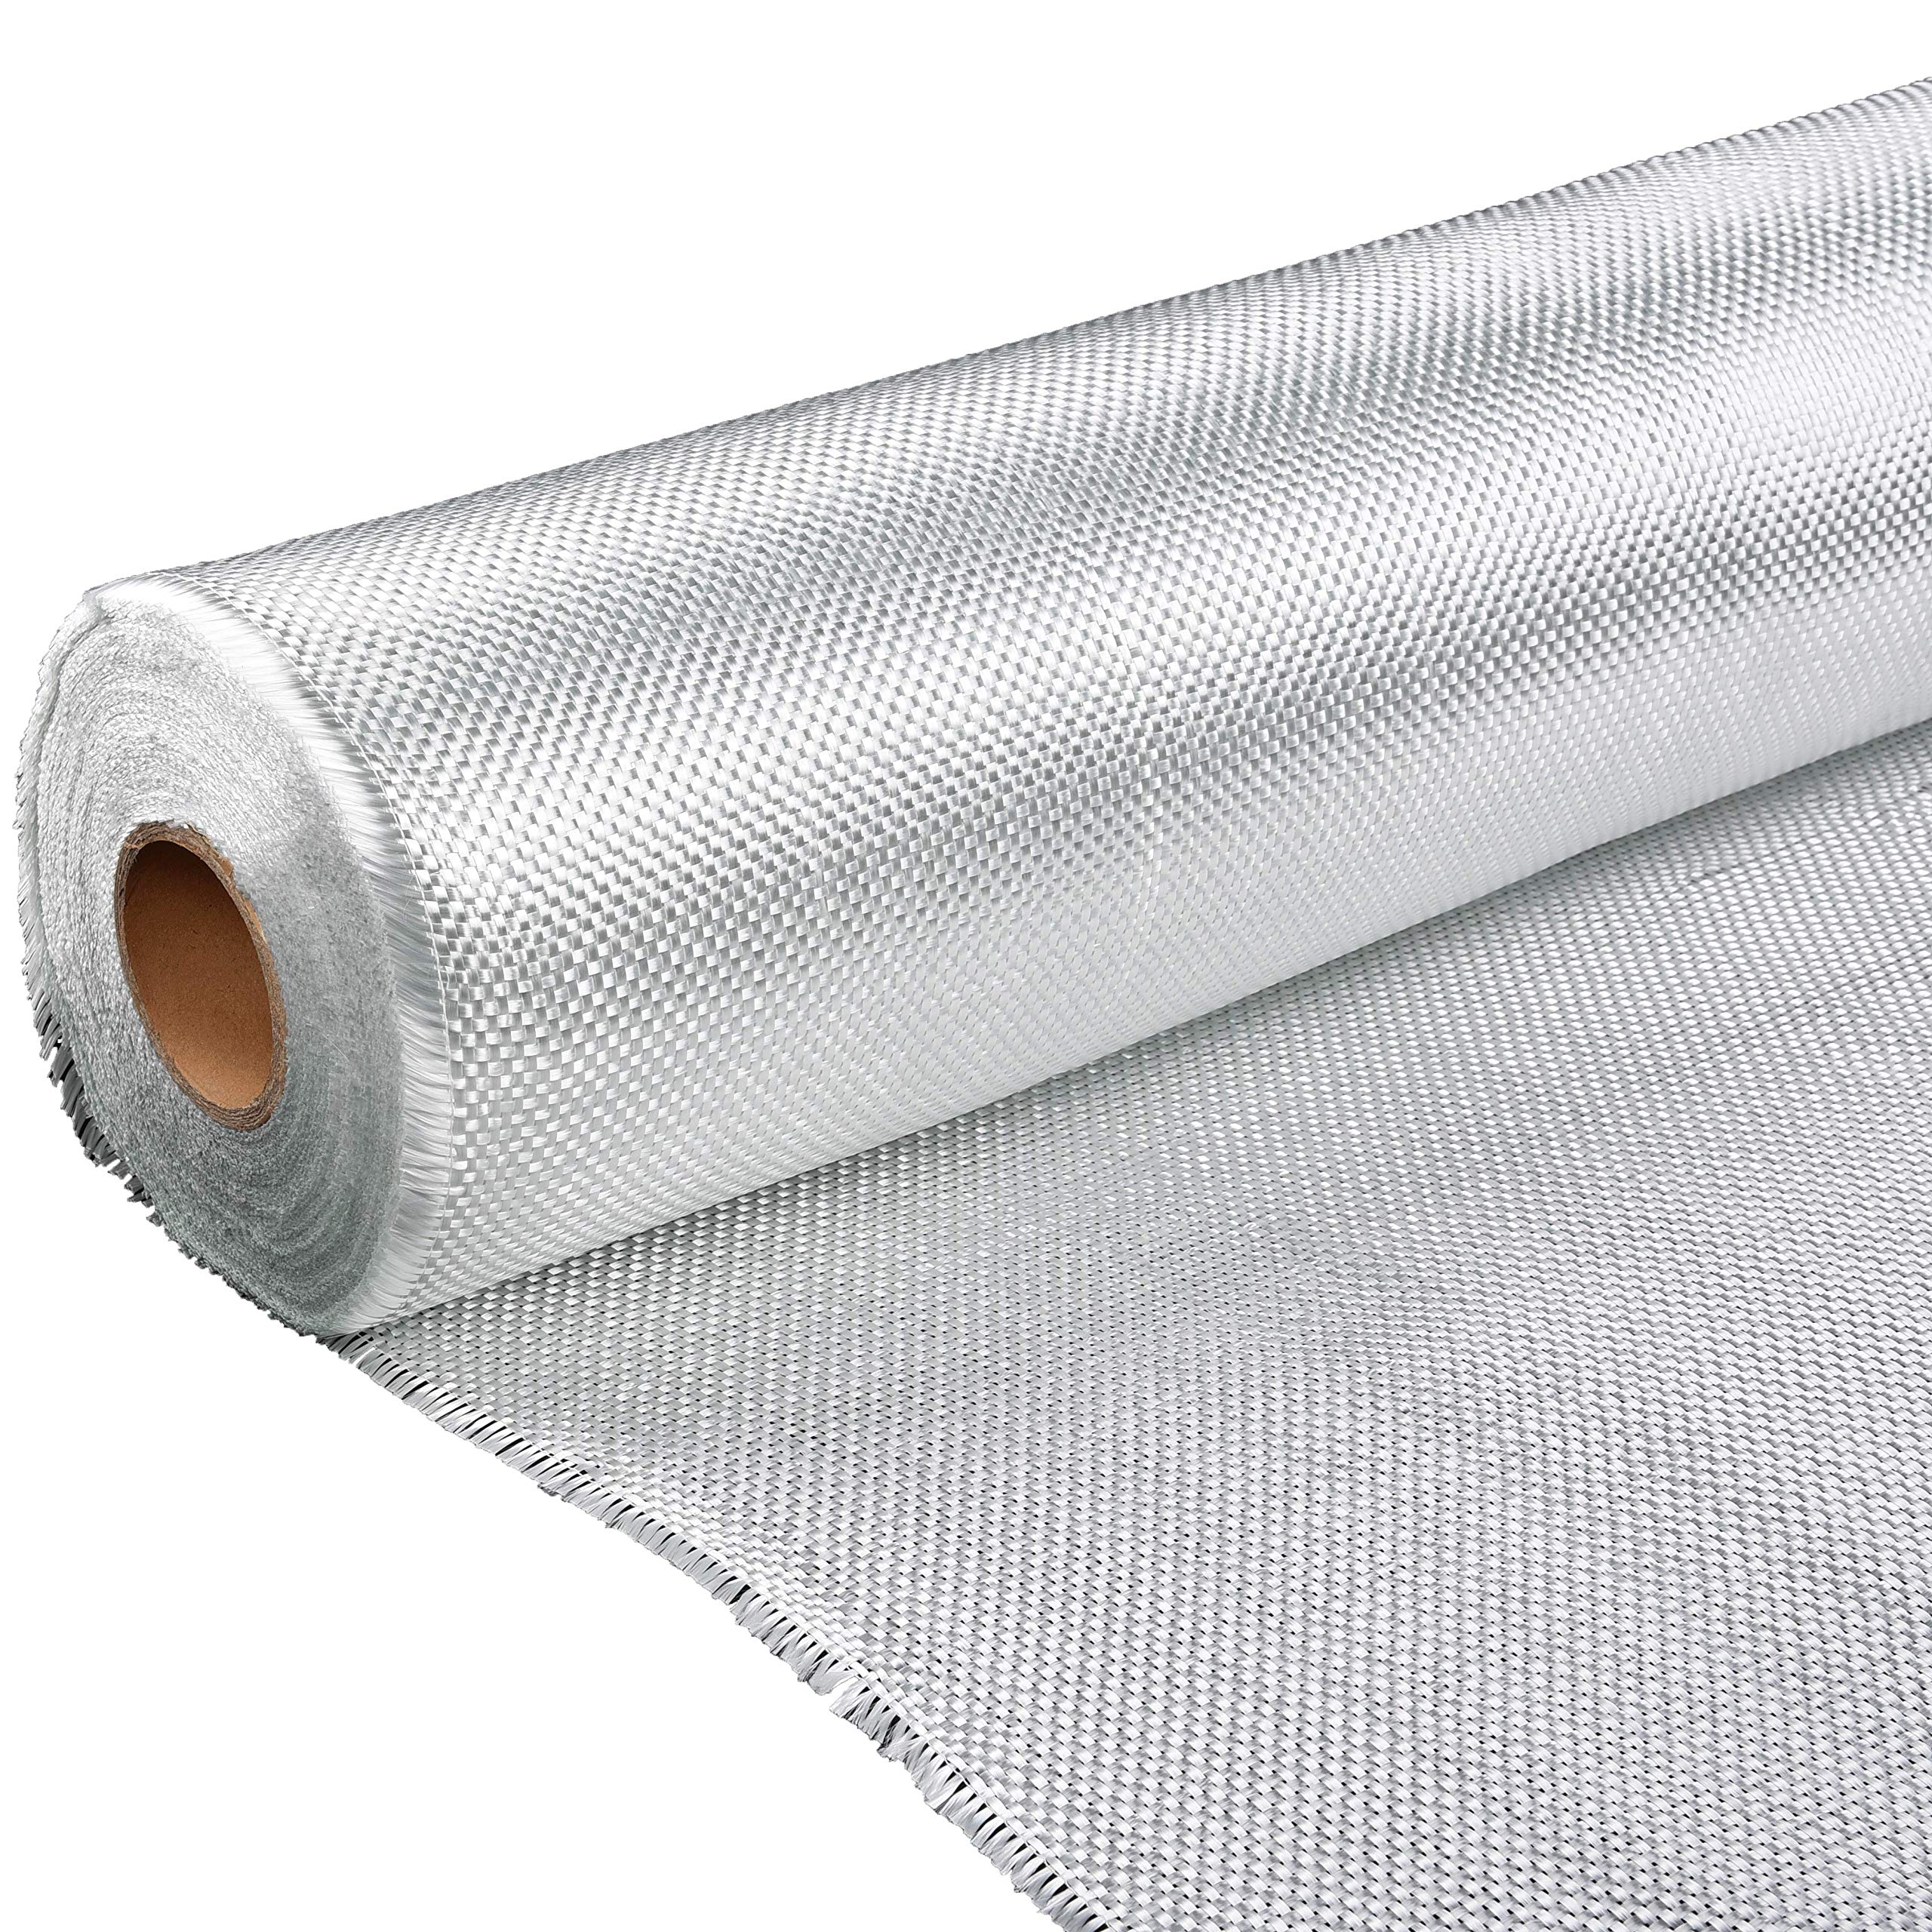 Рулон ткани из стекловолокна - коврик из рубленых прядей (3)